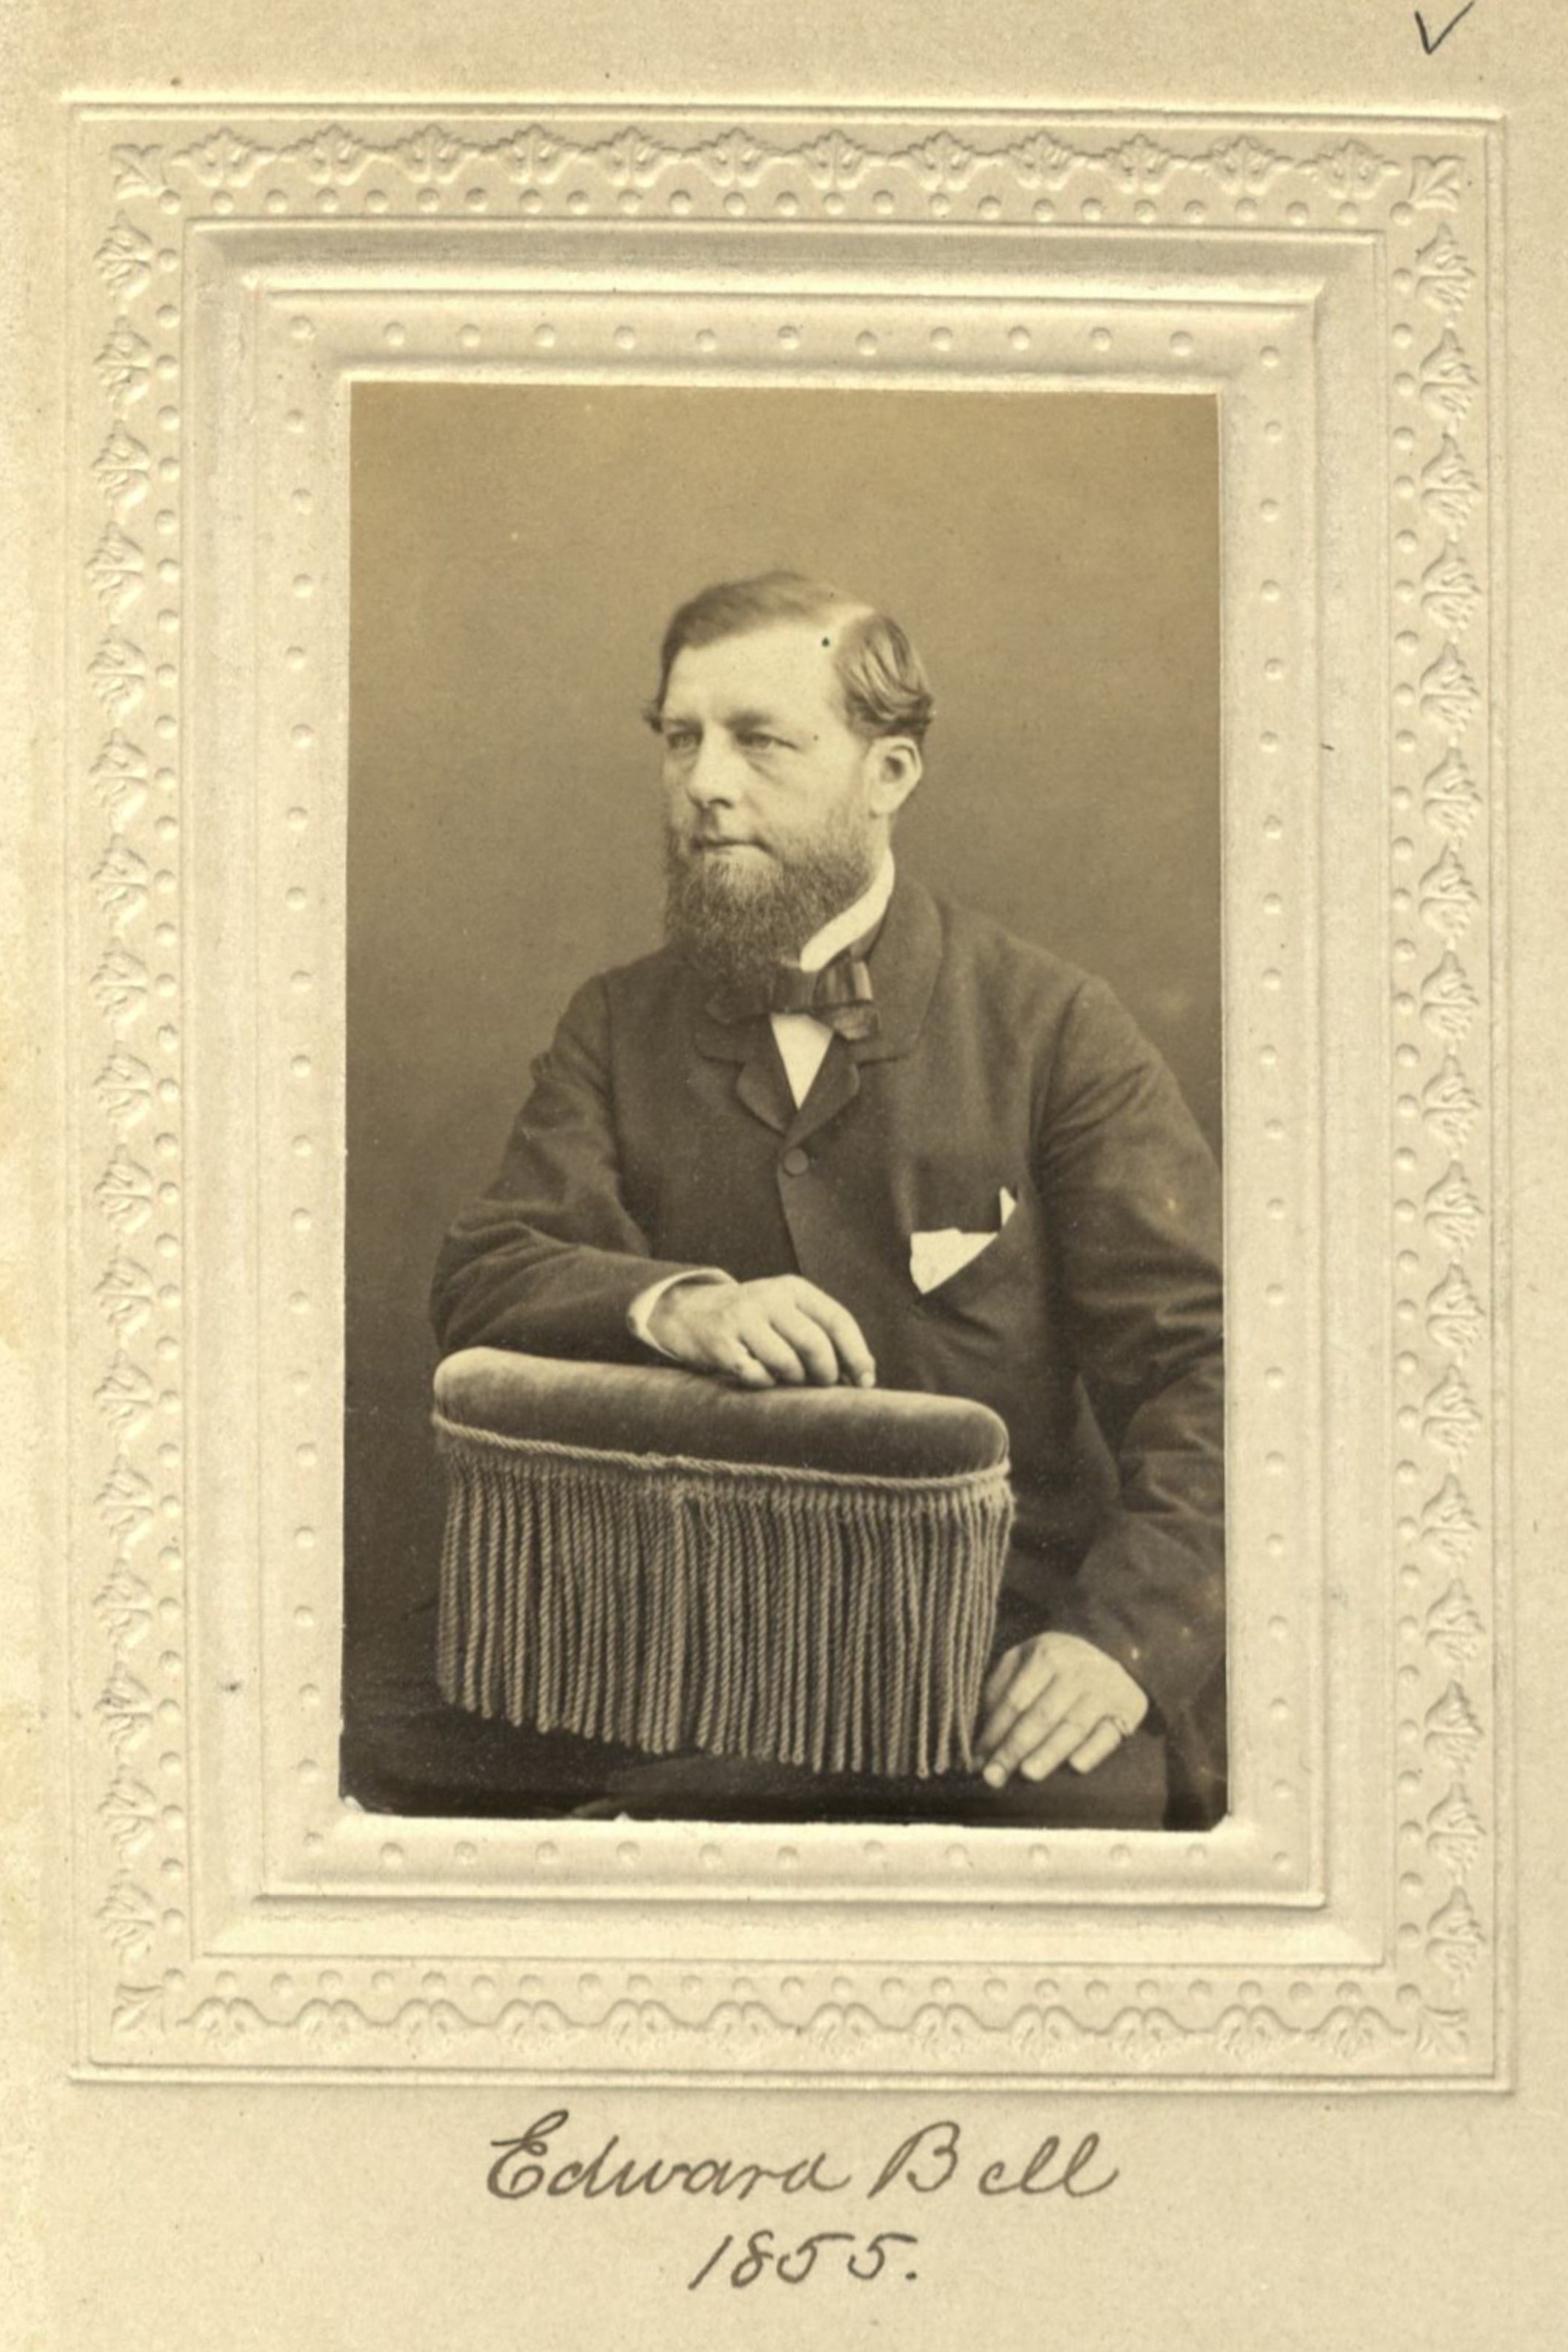 Member portrait of Edward Bell